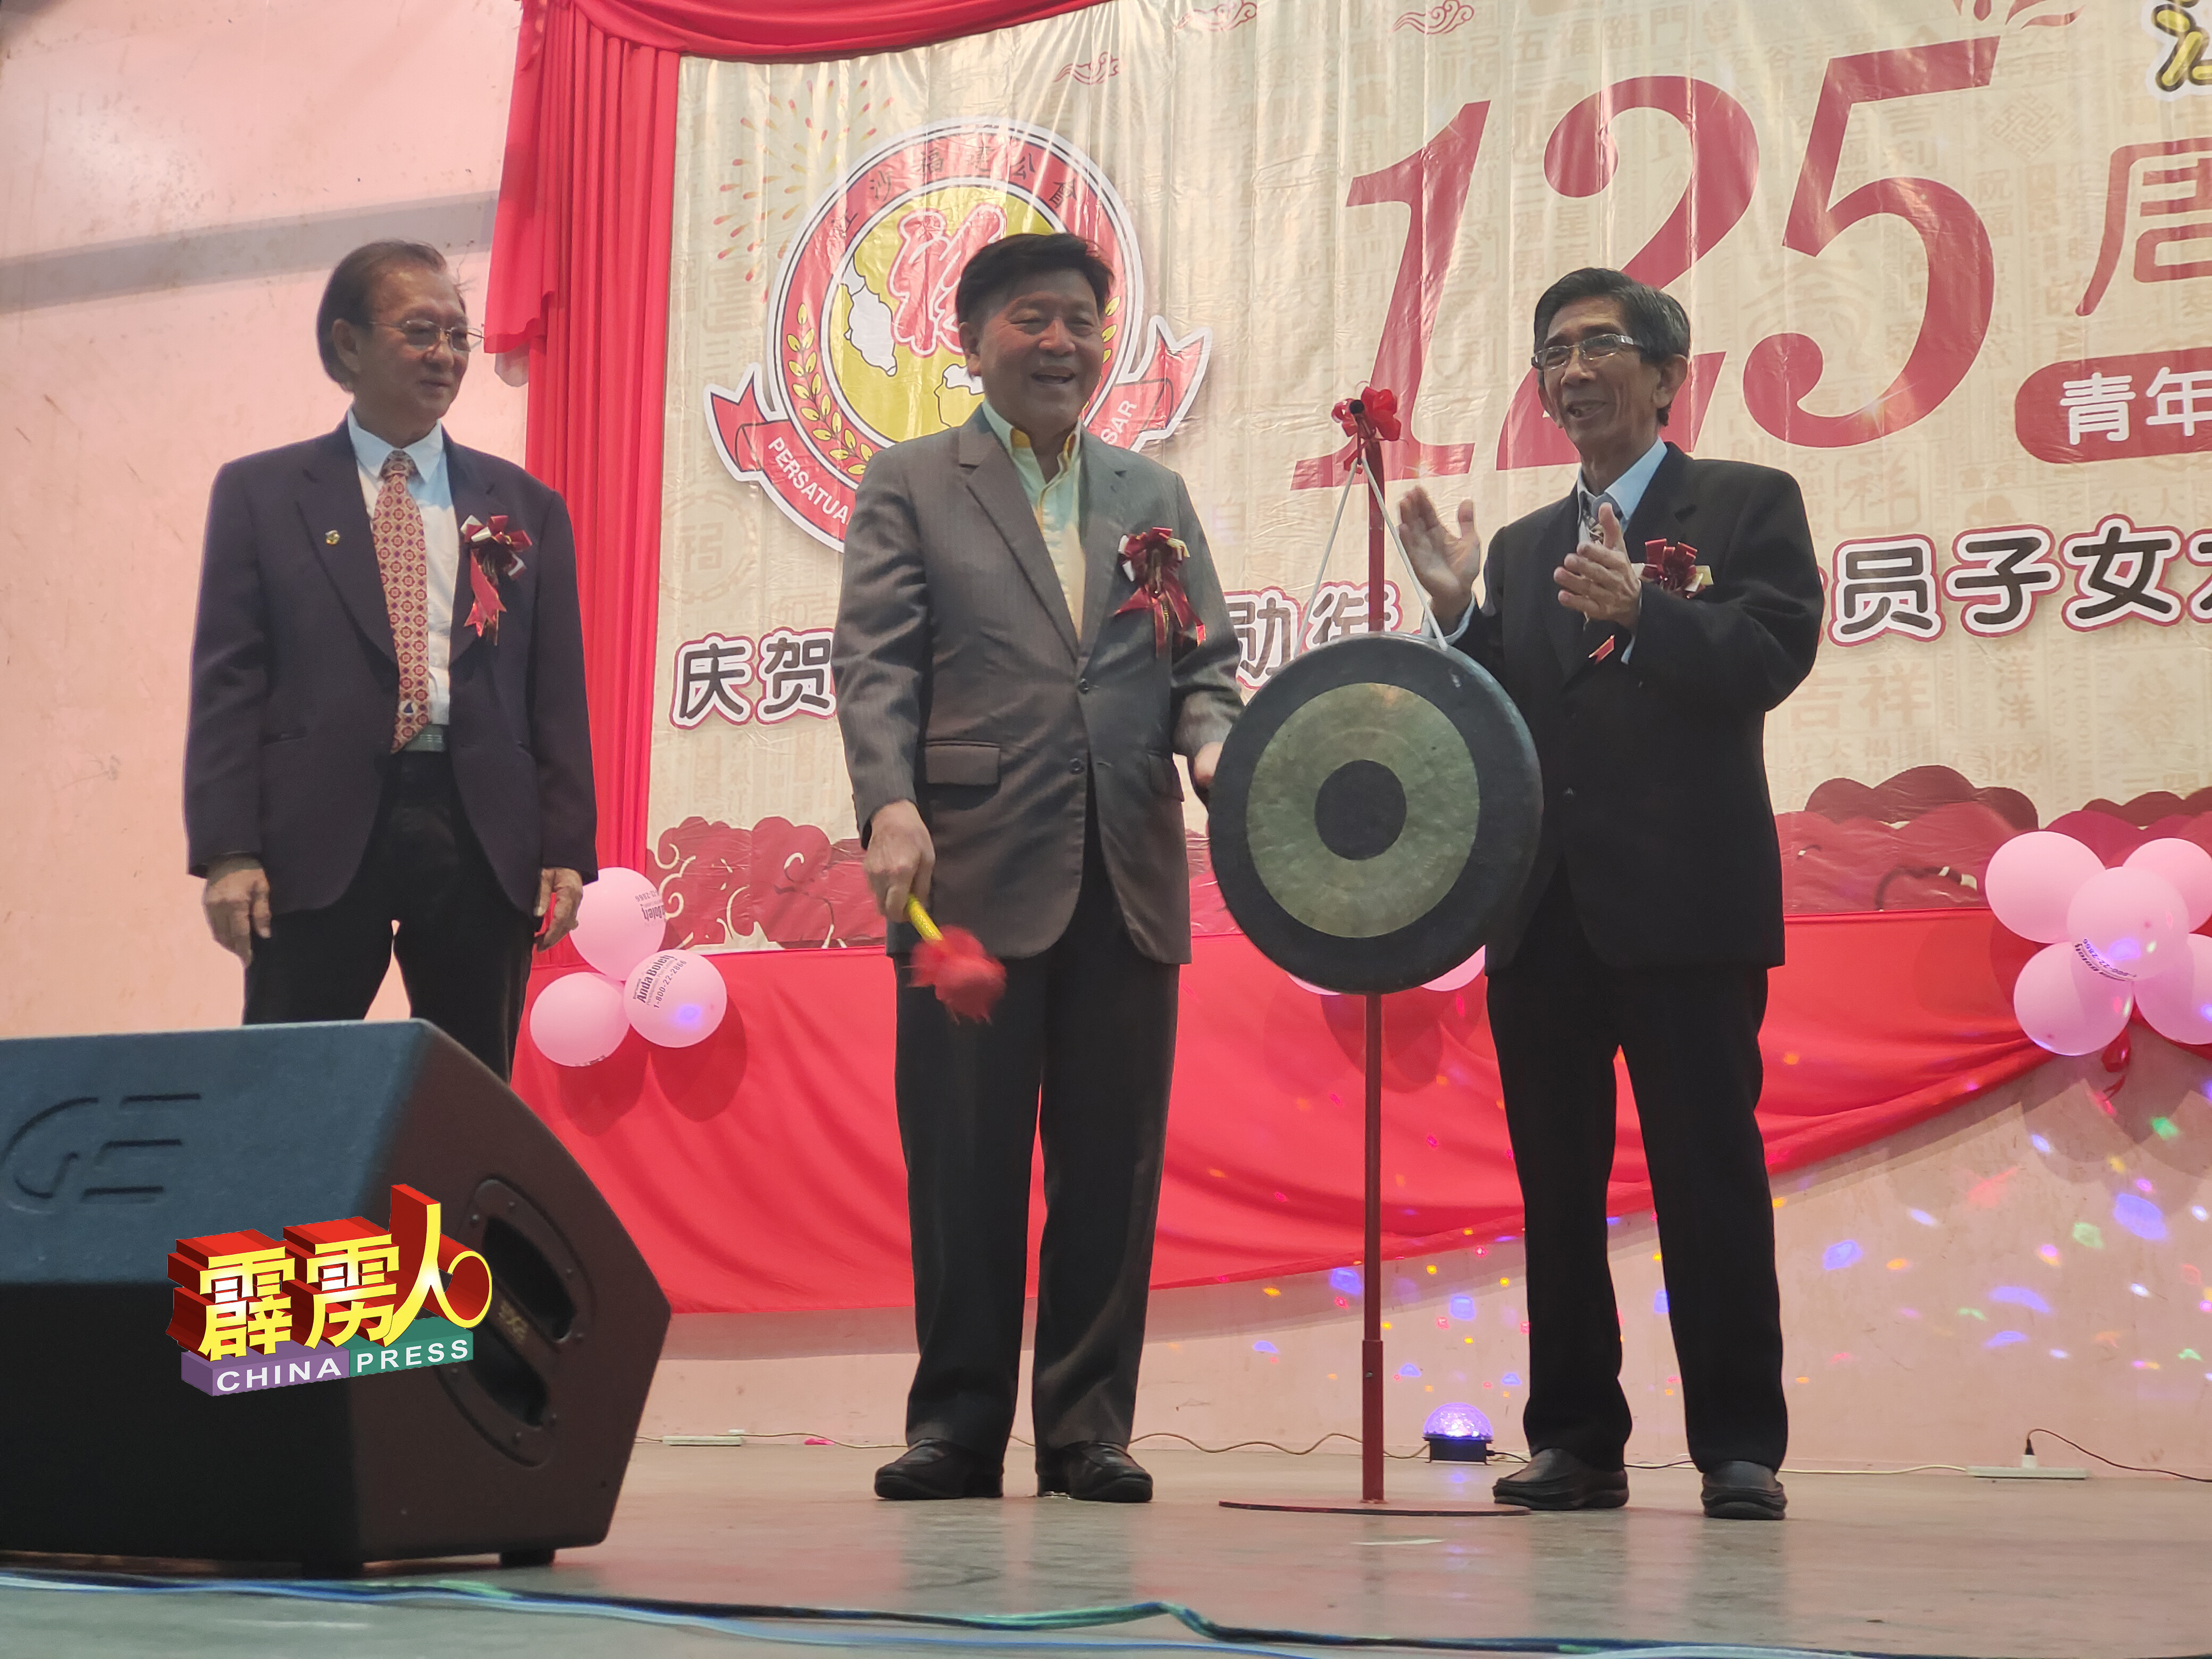 陈康益（中）为江沙福建公会庆祝125週年庆典主持鸣锣仪式。黄奕星（左）及蔡长池（ 右，工委会主席）陪同。